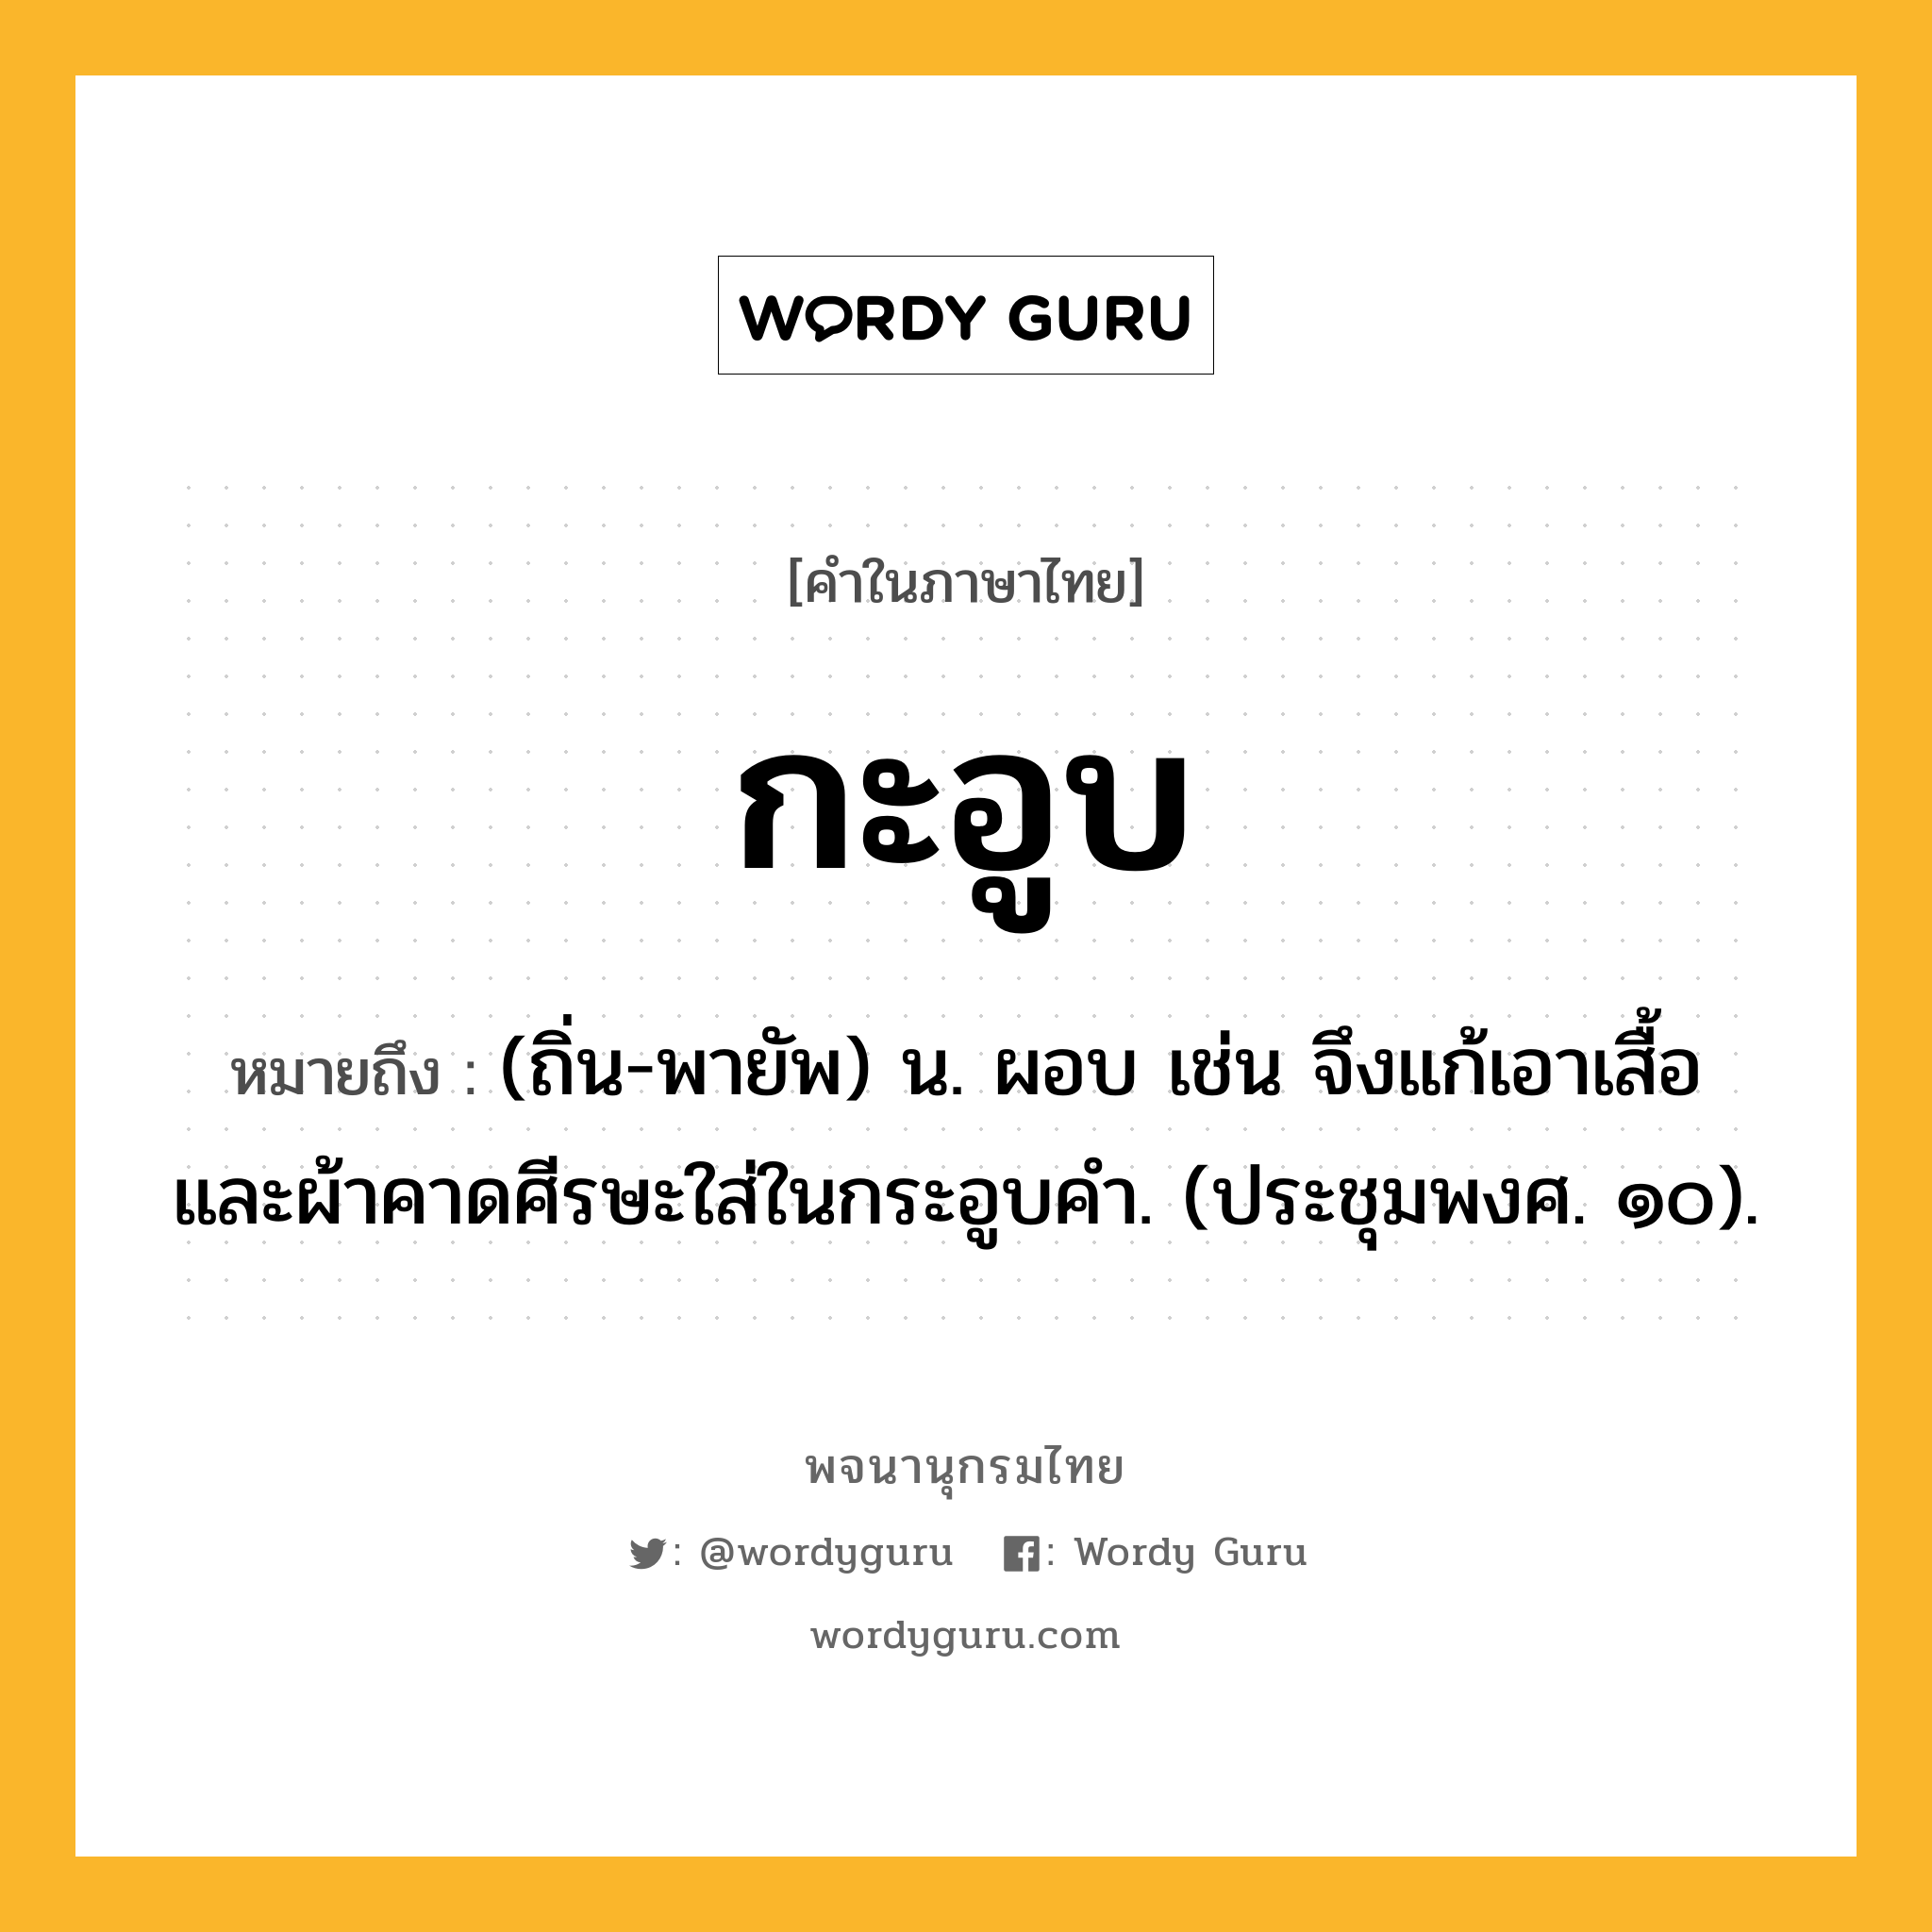 กะอูบ หมายถึงอะไร?, คำในภาษาไทย กะอูบ หมายถึง (ถิ่น-พายัพ) น. ผอบ เช่น จึงแก้เอาเสื้อและผ้าคาดศีรษะใส่ในกระอูบคำ. (ประชุมพงศ. ๑๐).